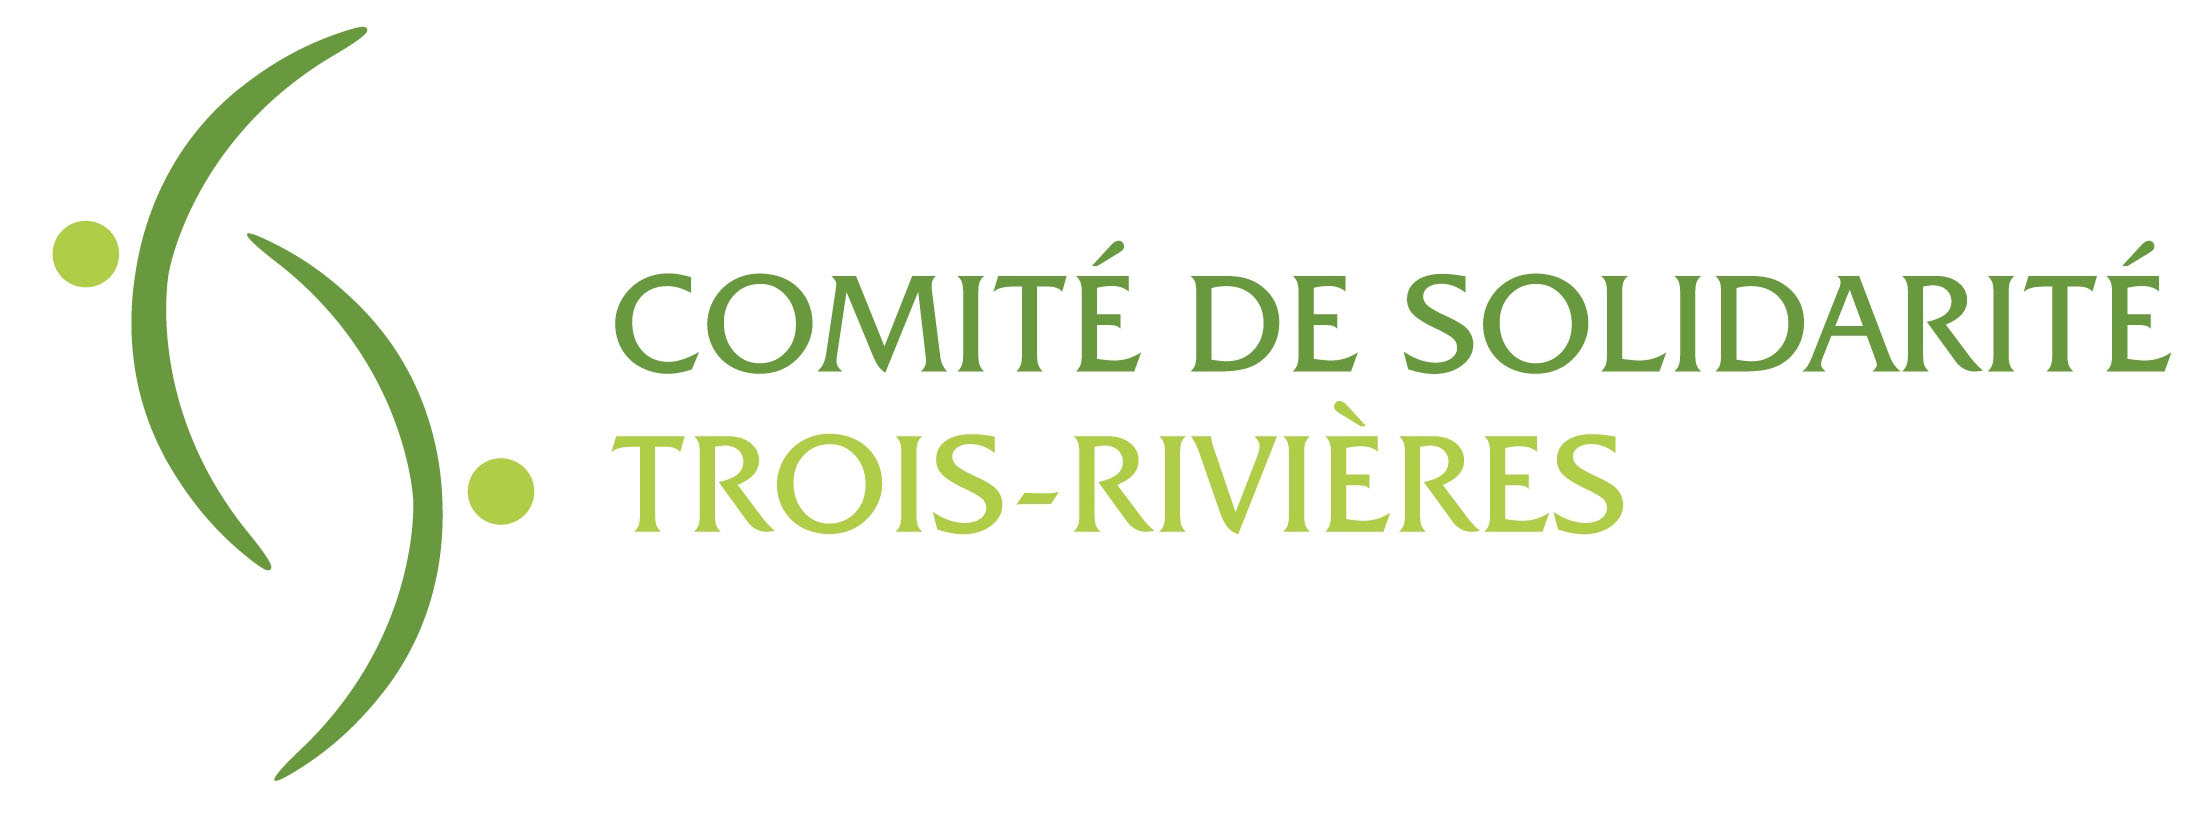 Comité de solidarité Trois-Rivières